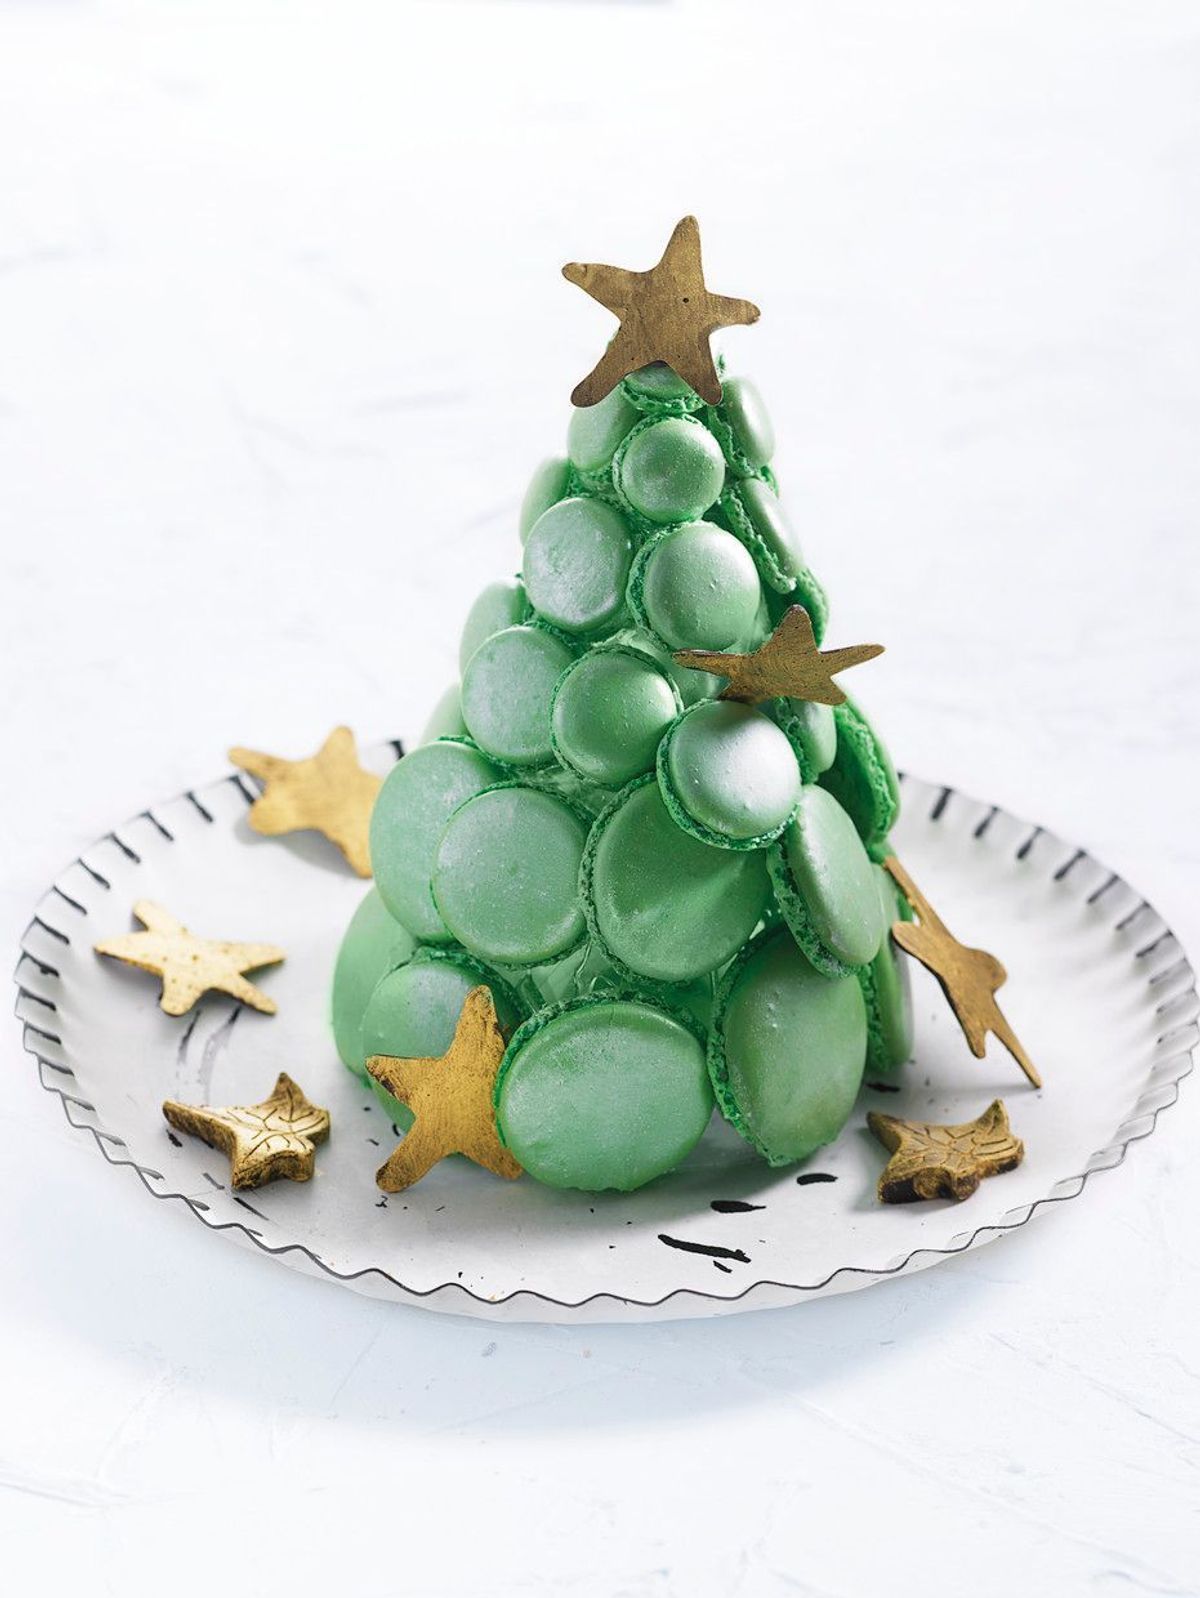 Enie backt: Rezept-Bild Weihnachtsbaum mit grünen Macarons			